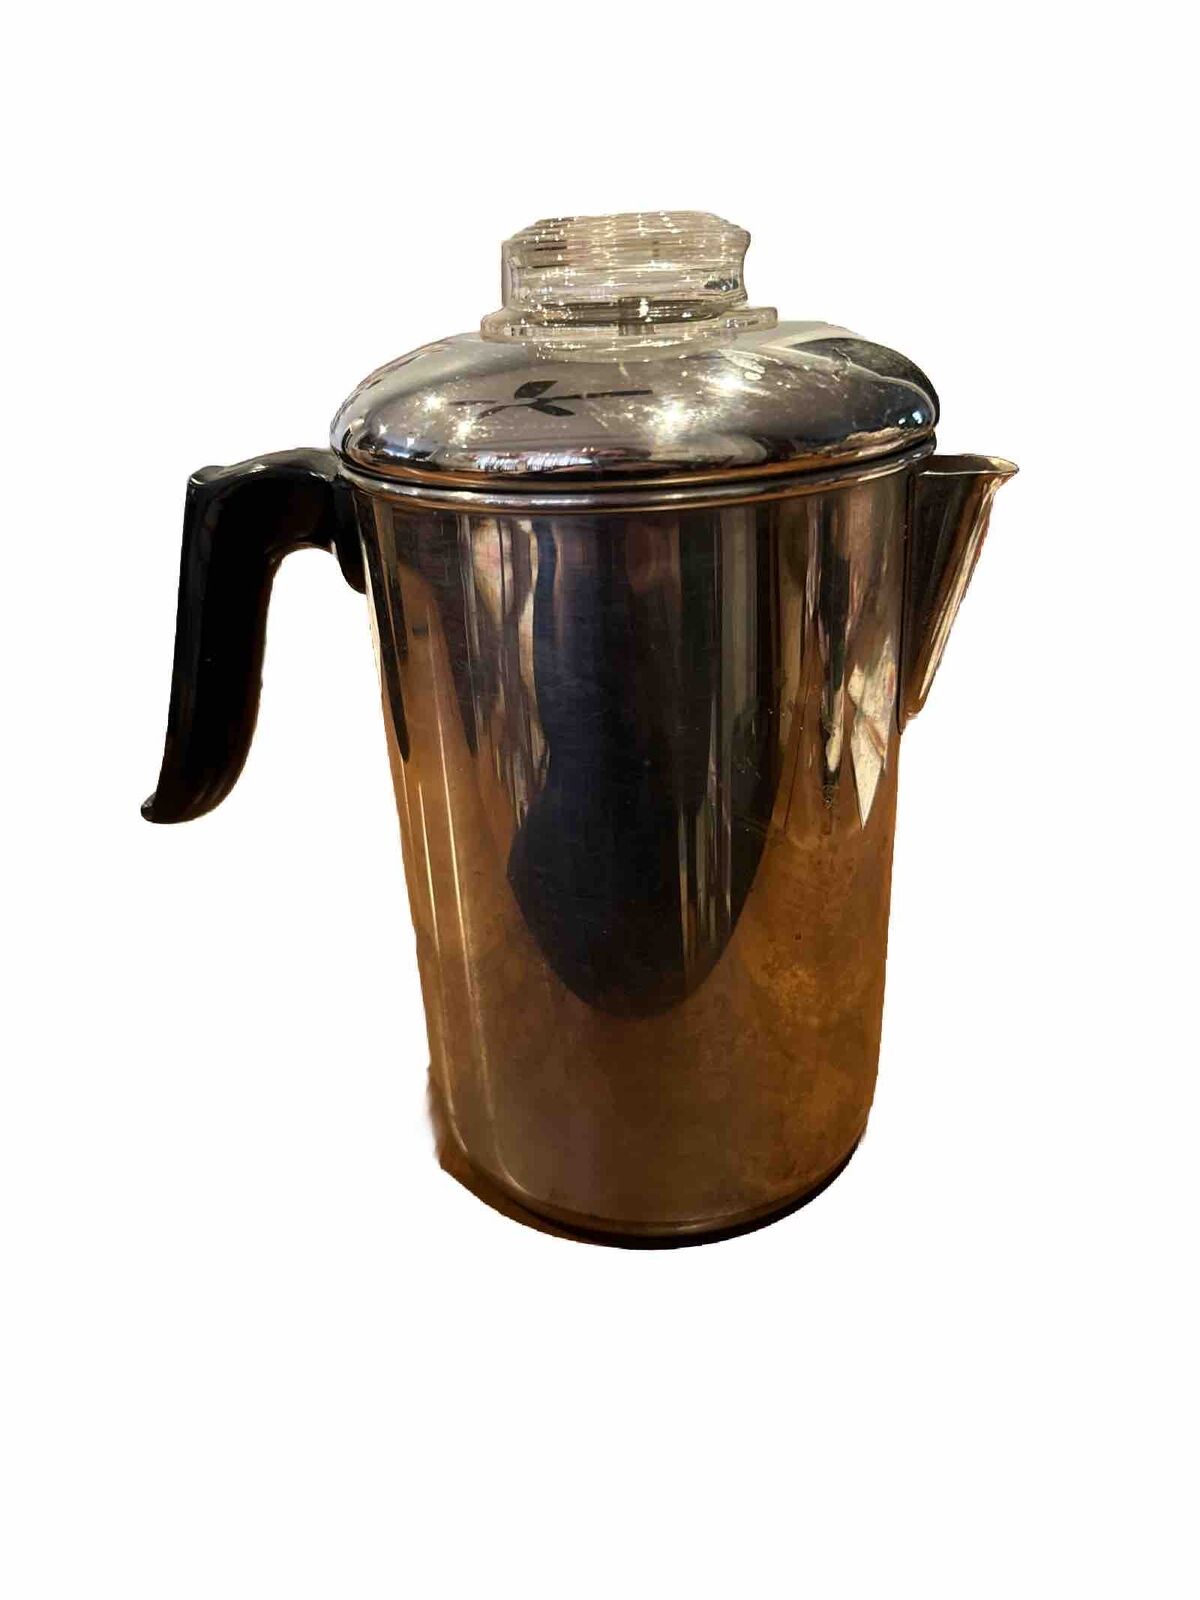 Revere Ware pre-1968 Copper Clad Bottom 8 Cup Coffee Percolator Stove Top